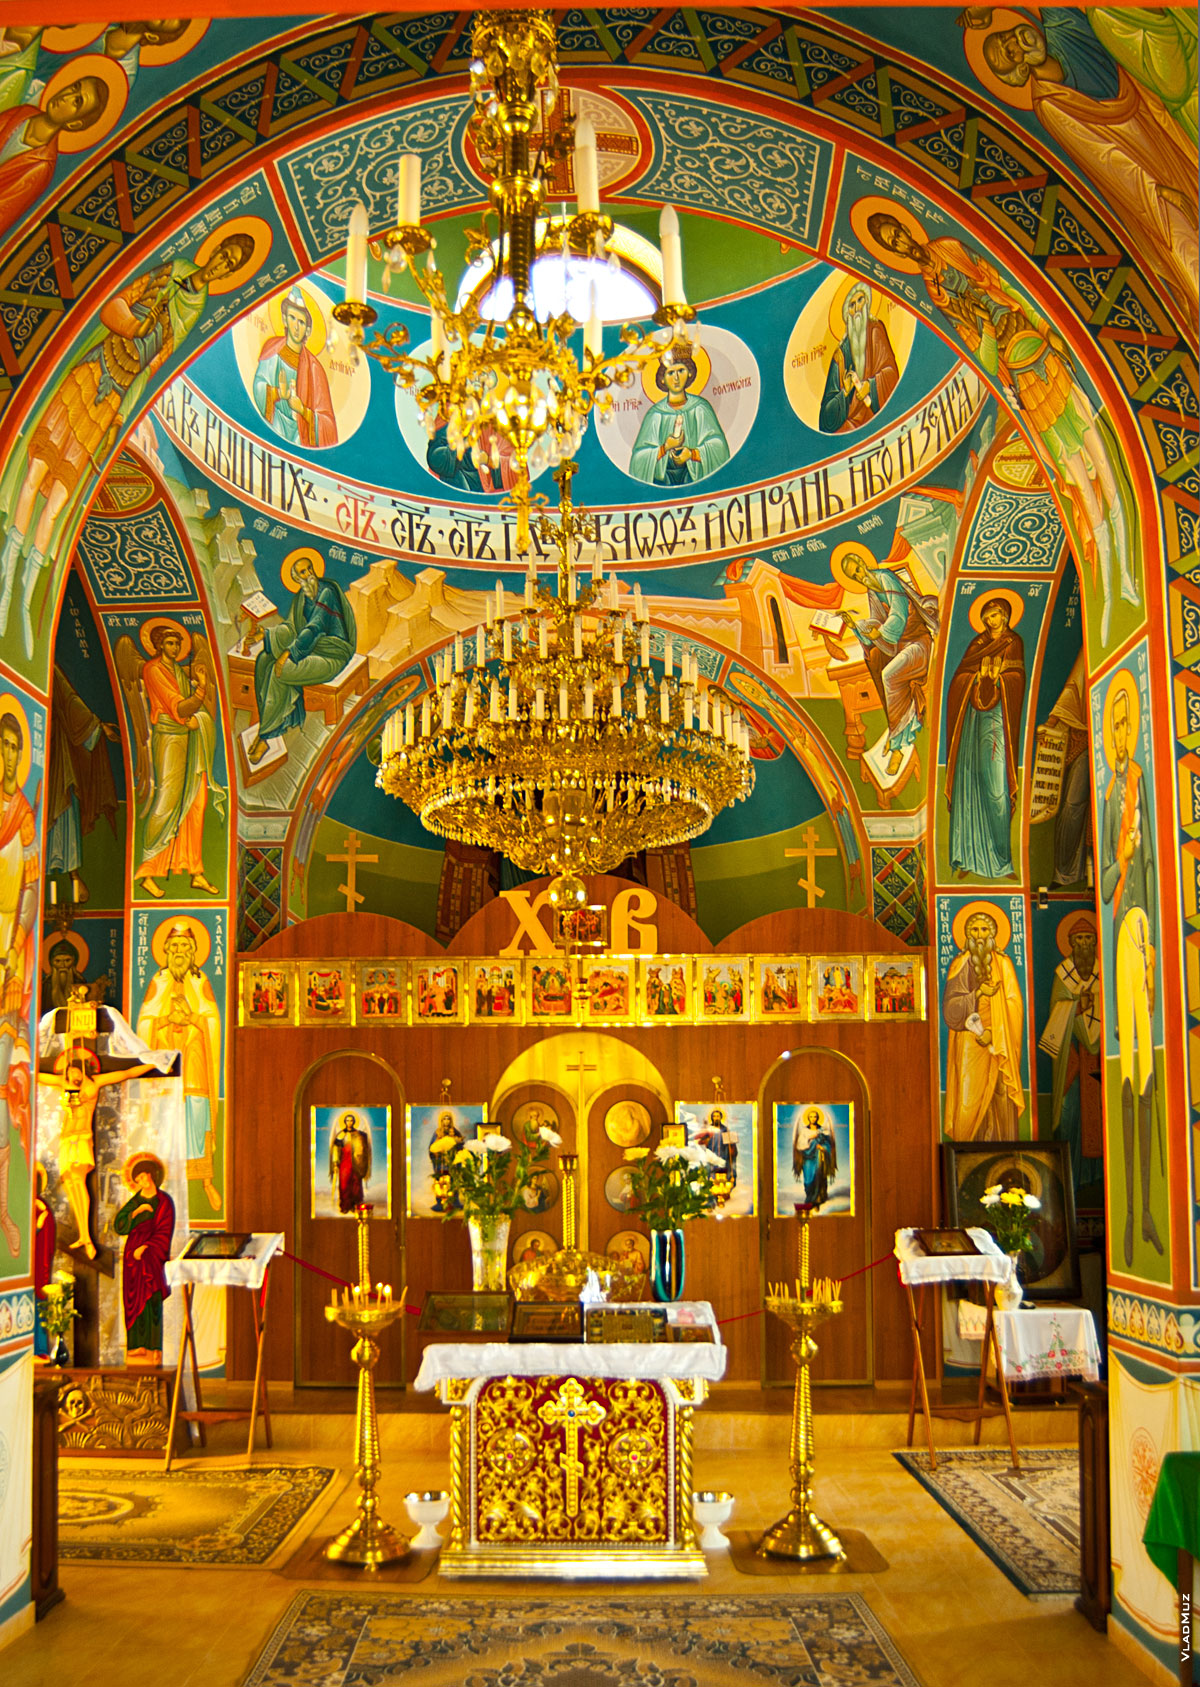 Так выглядит церковь Свято-Георгиевского монастыря внутри (фото с разрешением 1940 на 2725 пикселей в полном размере и высоком качестве)